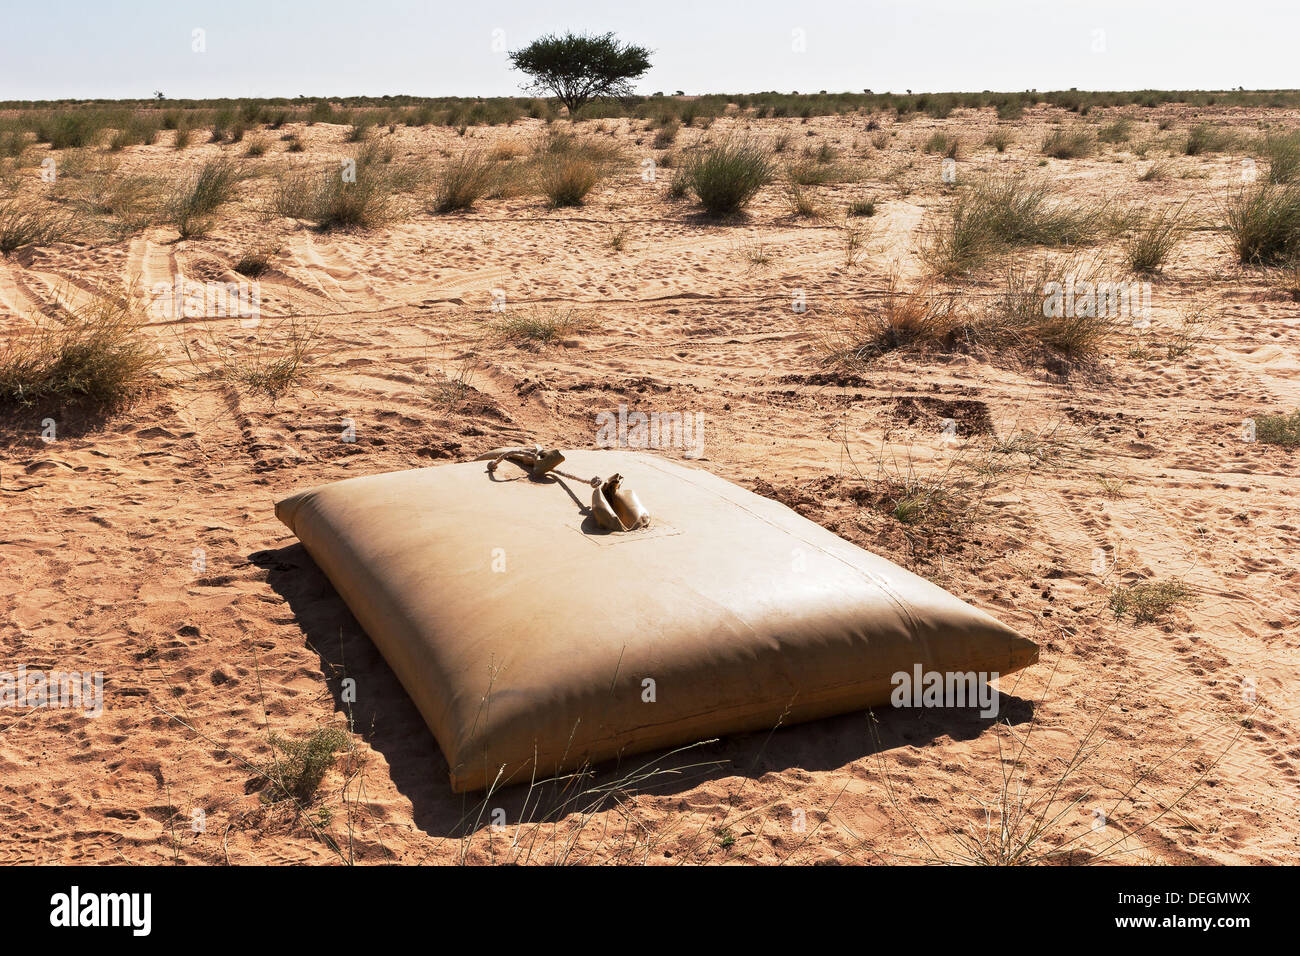 Almacenamiento de agua potable de vejiga en el desierto del Sahara, en el noroeste de Mauritania, para uso de las comunidades nómadas en remotas zonas áridas, África Foto de stock